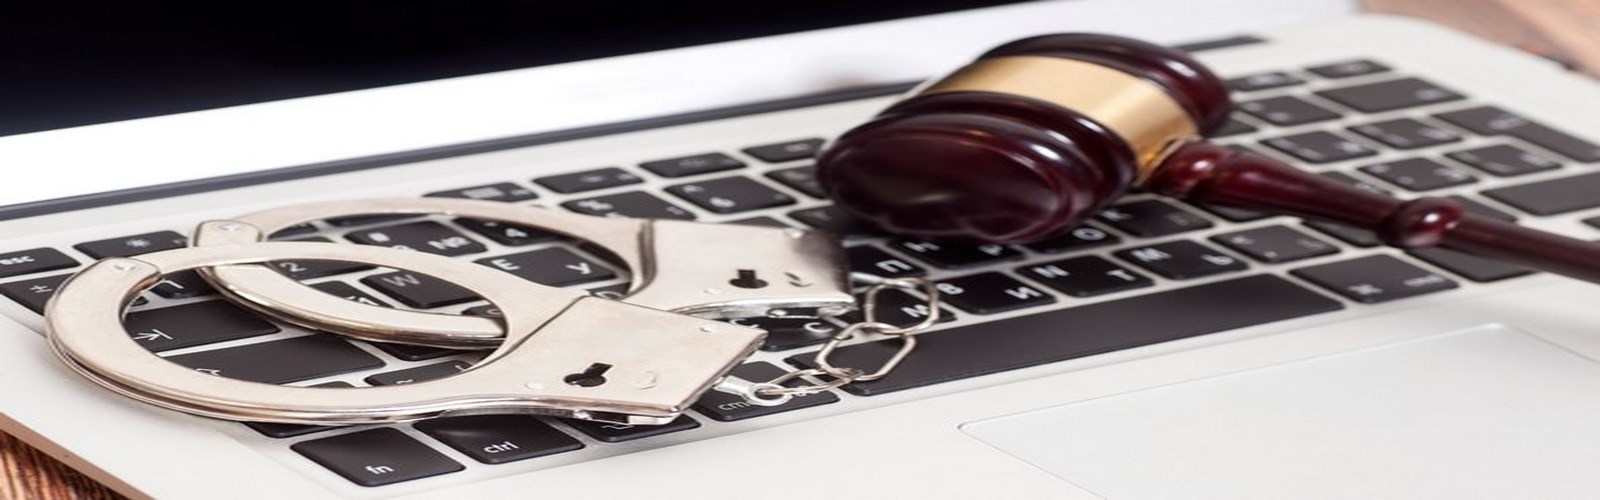 bilişim suçları avukatı melike kayseri internet ceza